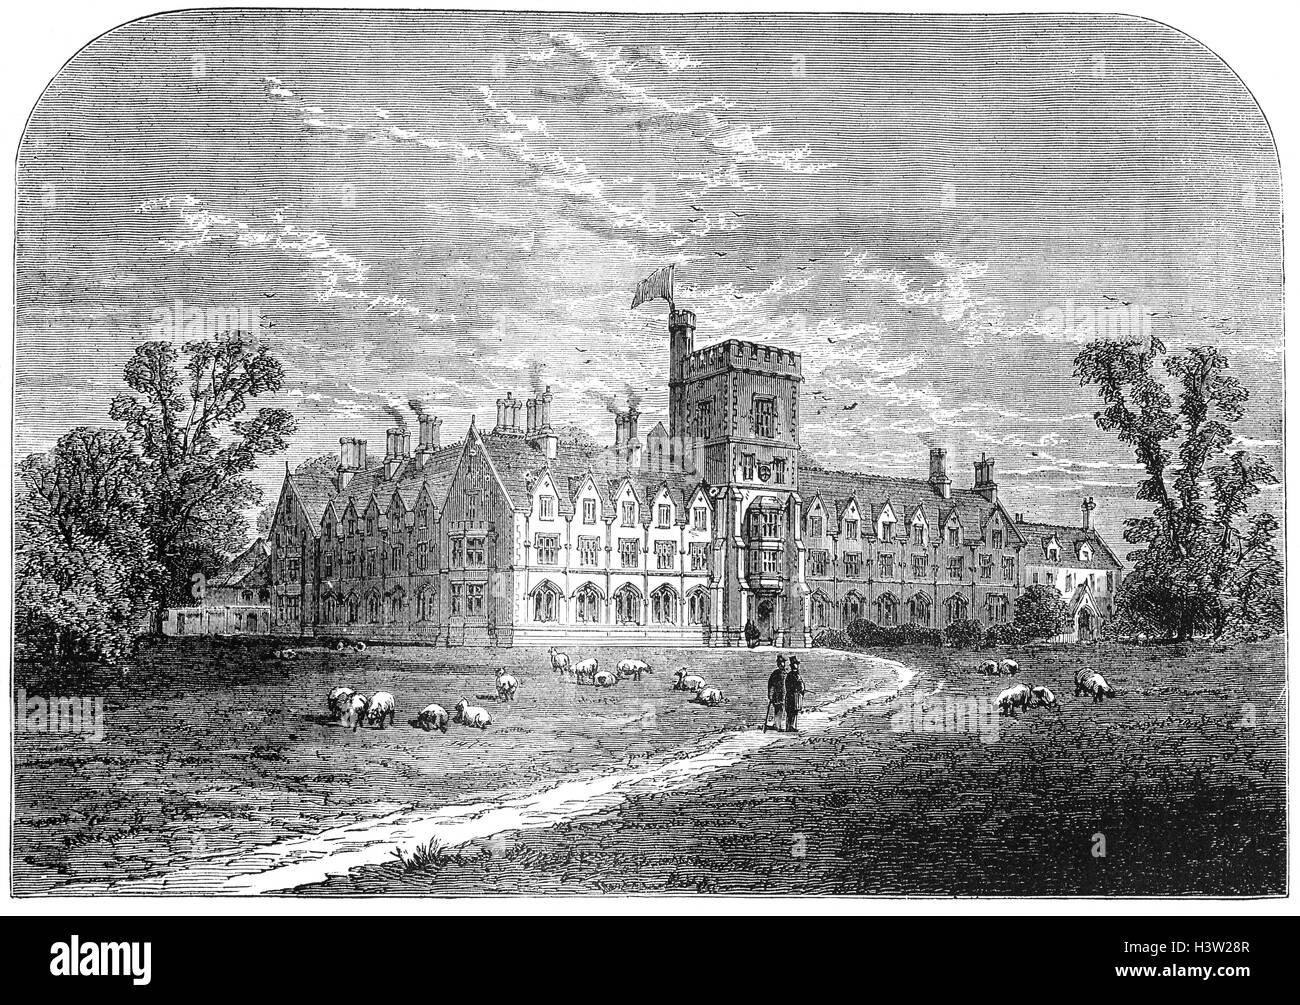 Il Royal Università Agricola o RAU (precedentemente conosciuto come il Royal Agricultural College o RAC) si trova a Cirencester, Gloucestershire, UK. Istituito nel 1845, è stata la prima università agricola nel mondo di lingua inglese. Foto Stock